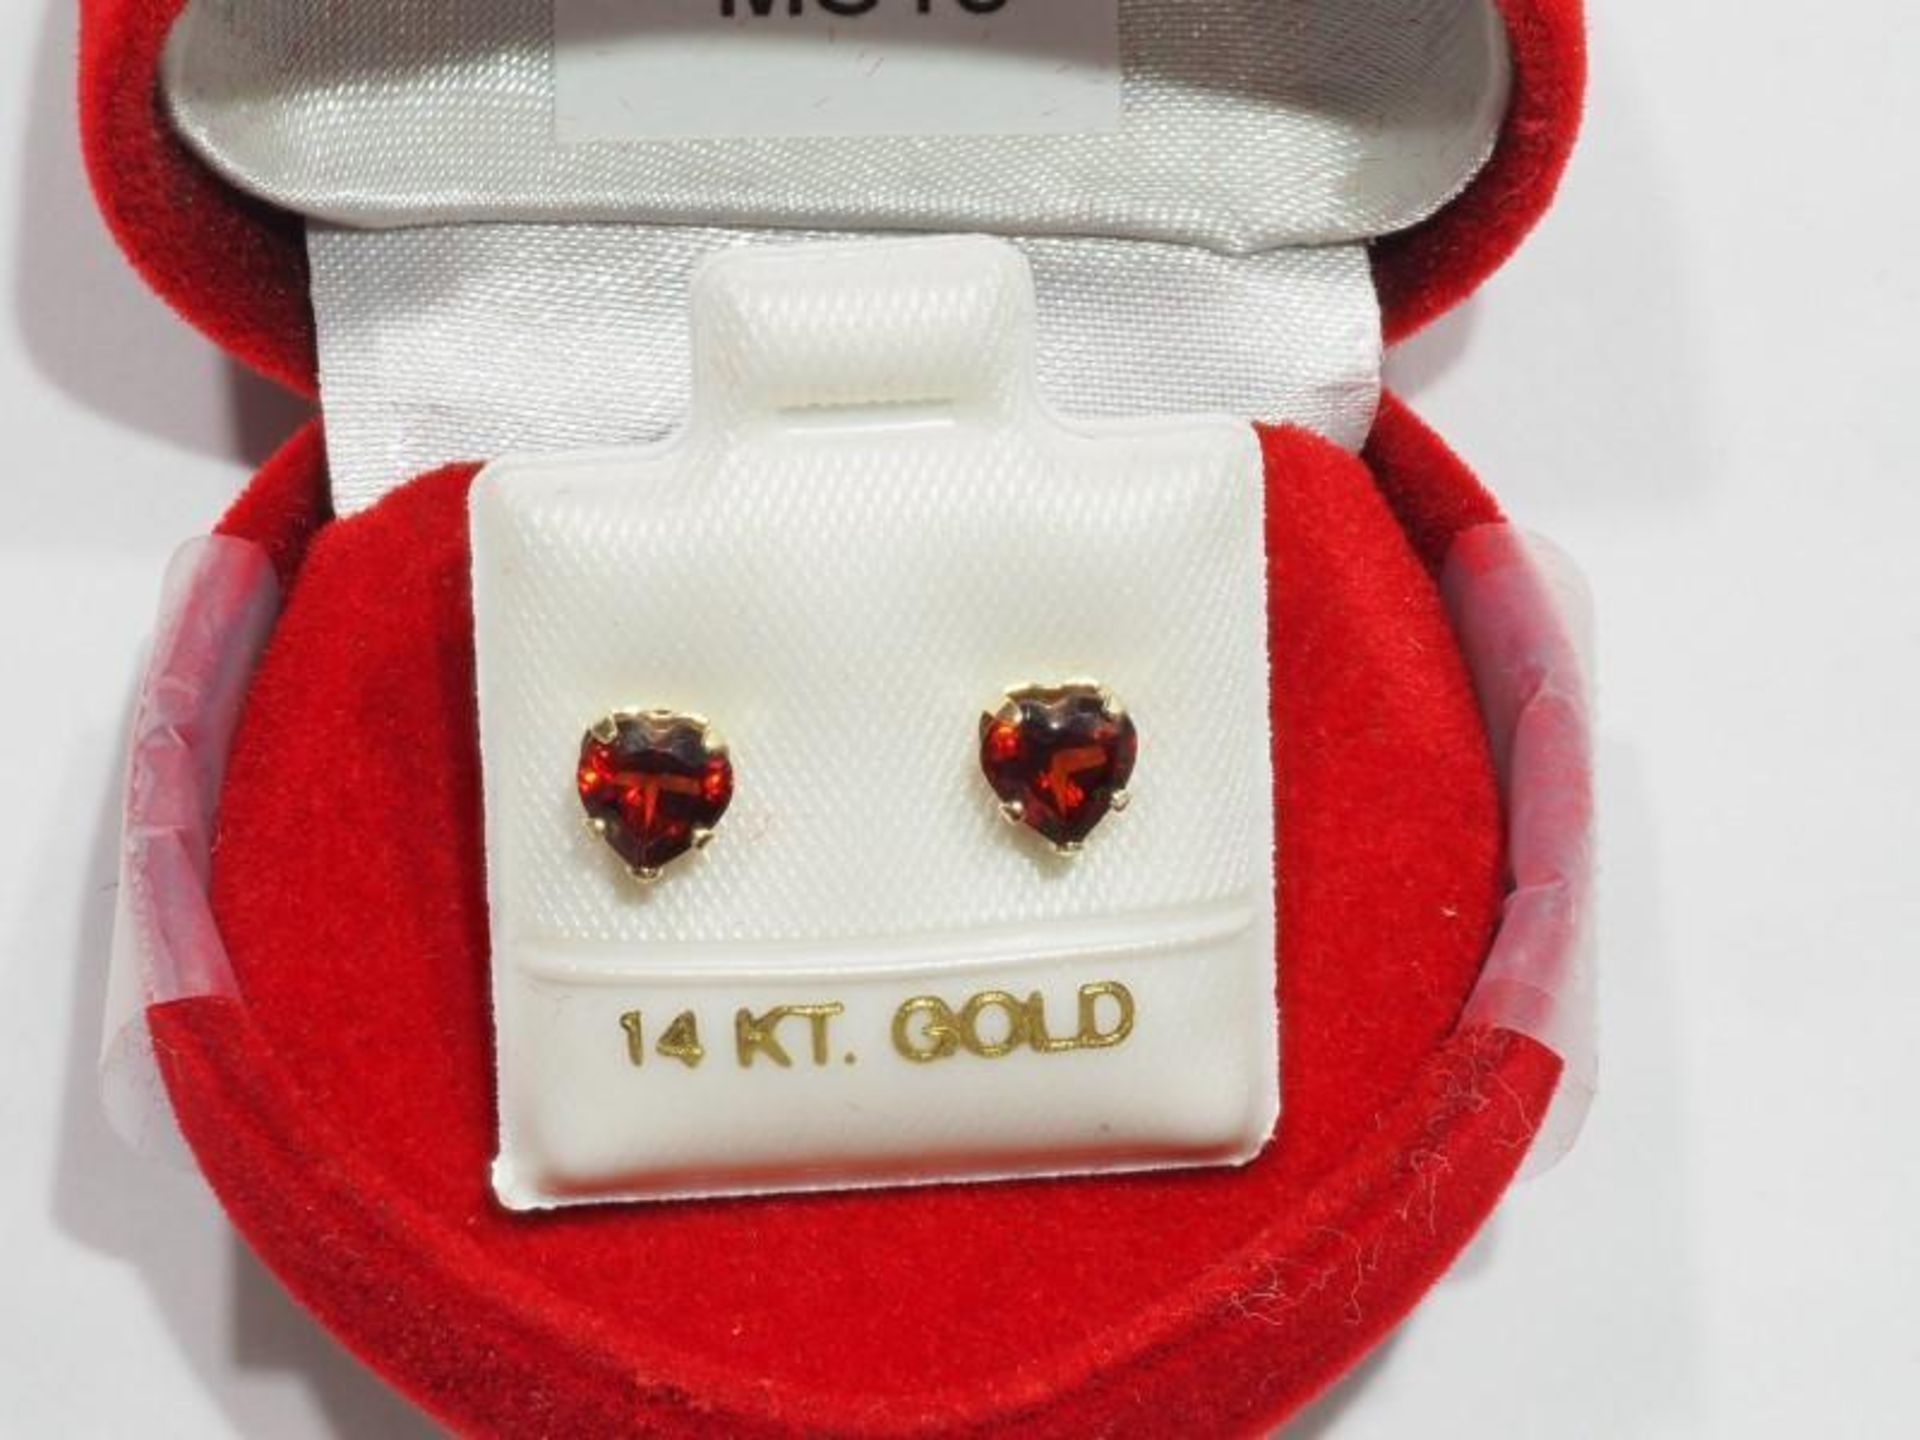 10K Gold Heart Shaped Garnet Earrings, Retail $240 (MS19 - 42) - Image 2 of 3